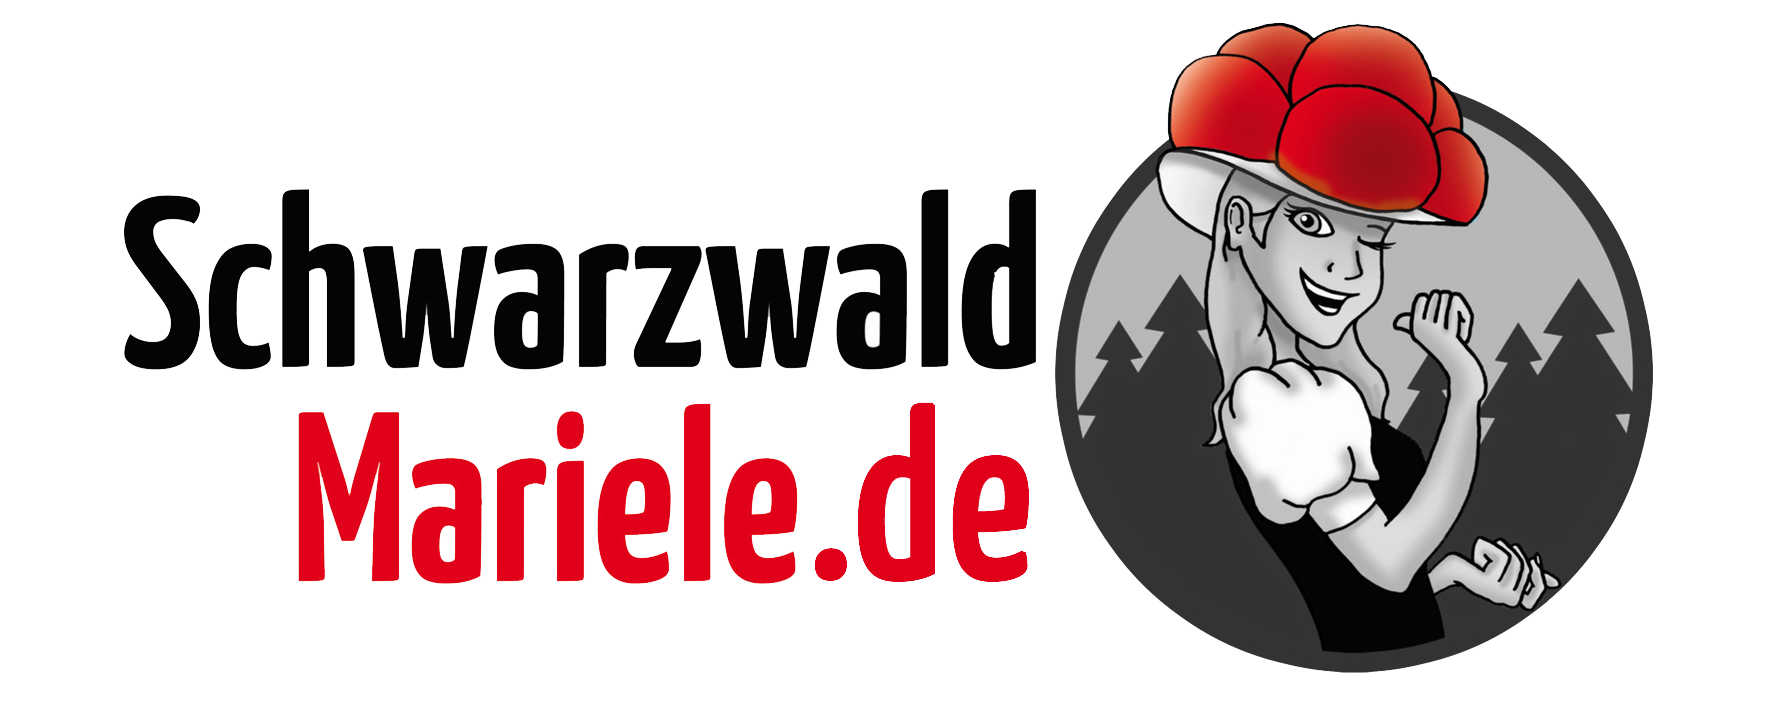 Schwarzwaldmariele